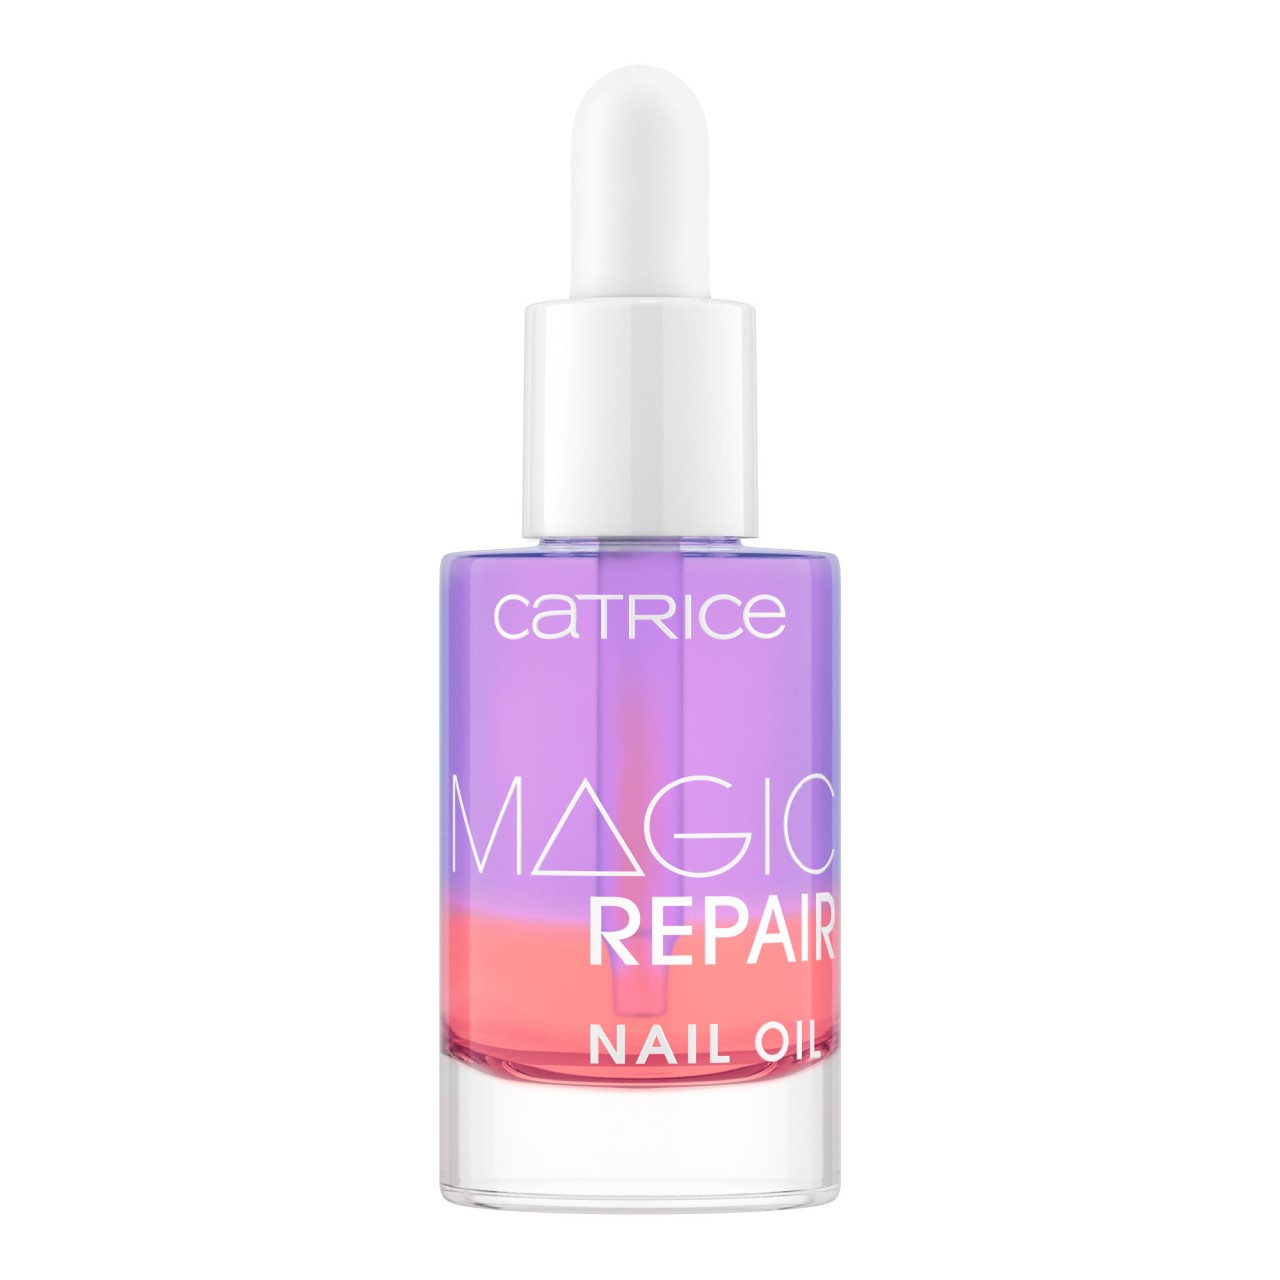 CATRICE - Magic Repair Nail Oil - 